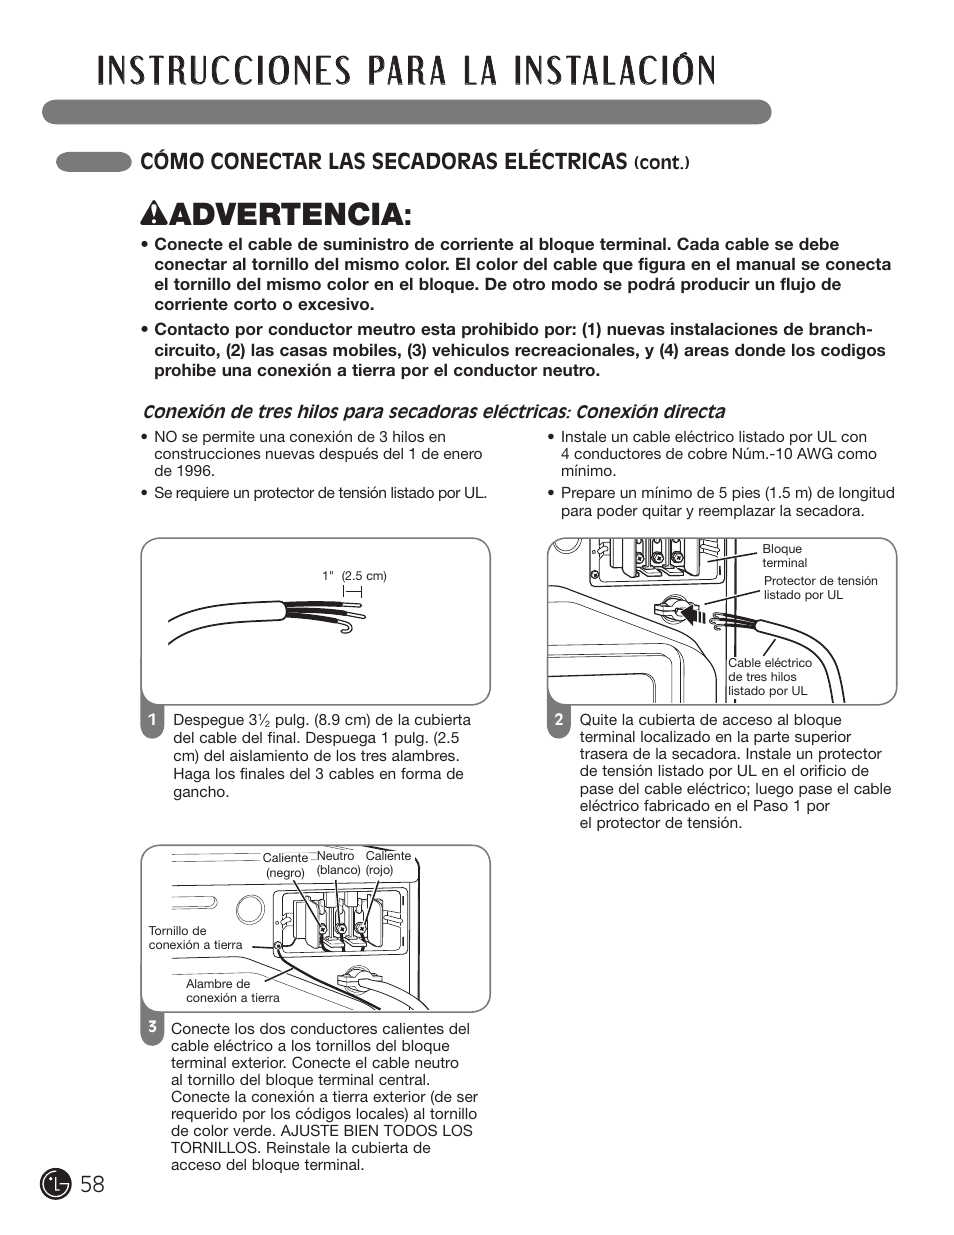 W advertencia, Cómo conectar las secadoras eléctricas | LG D5966W User Manual | Page 58 / 80